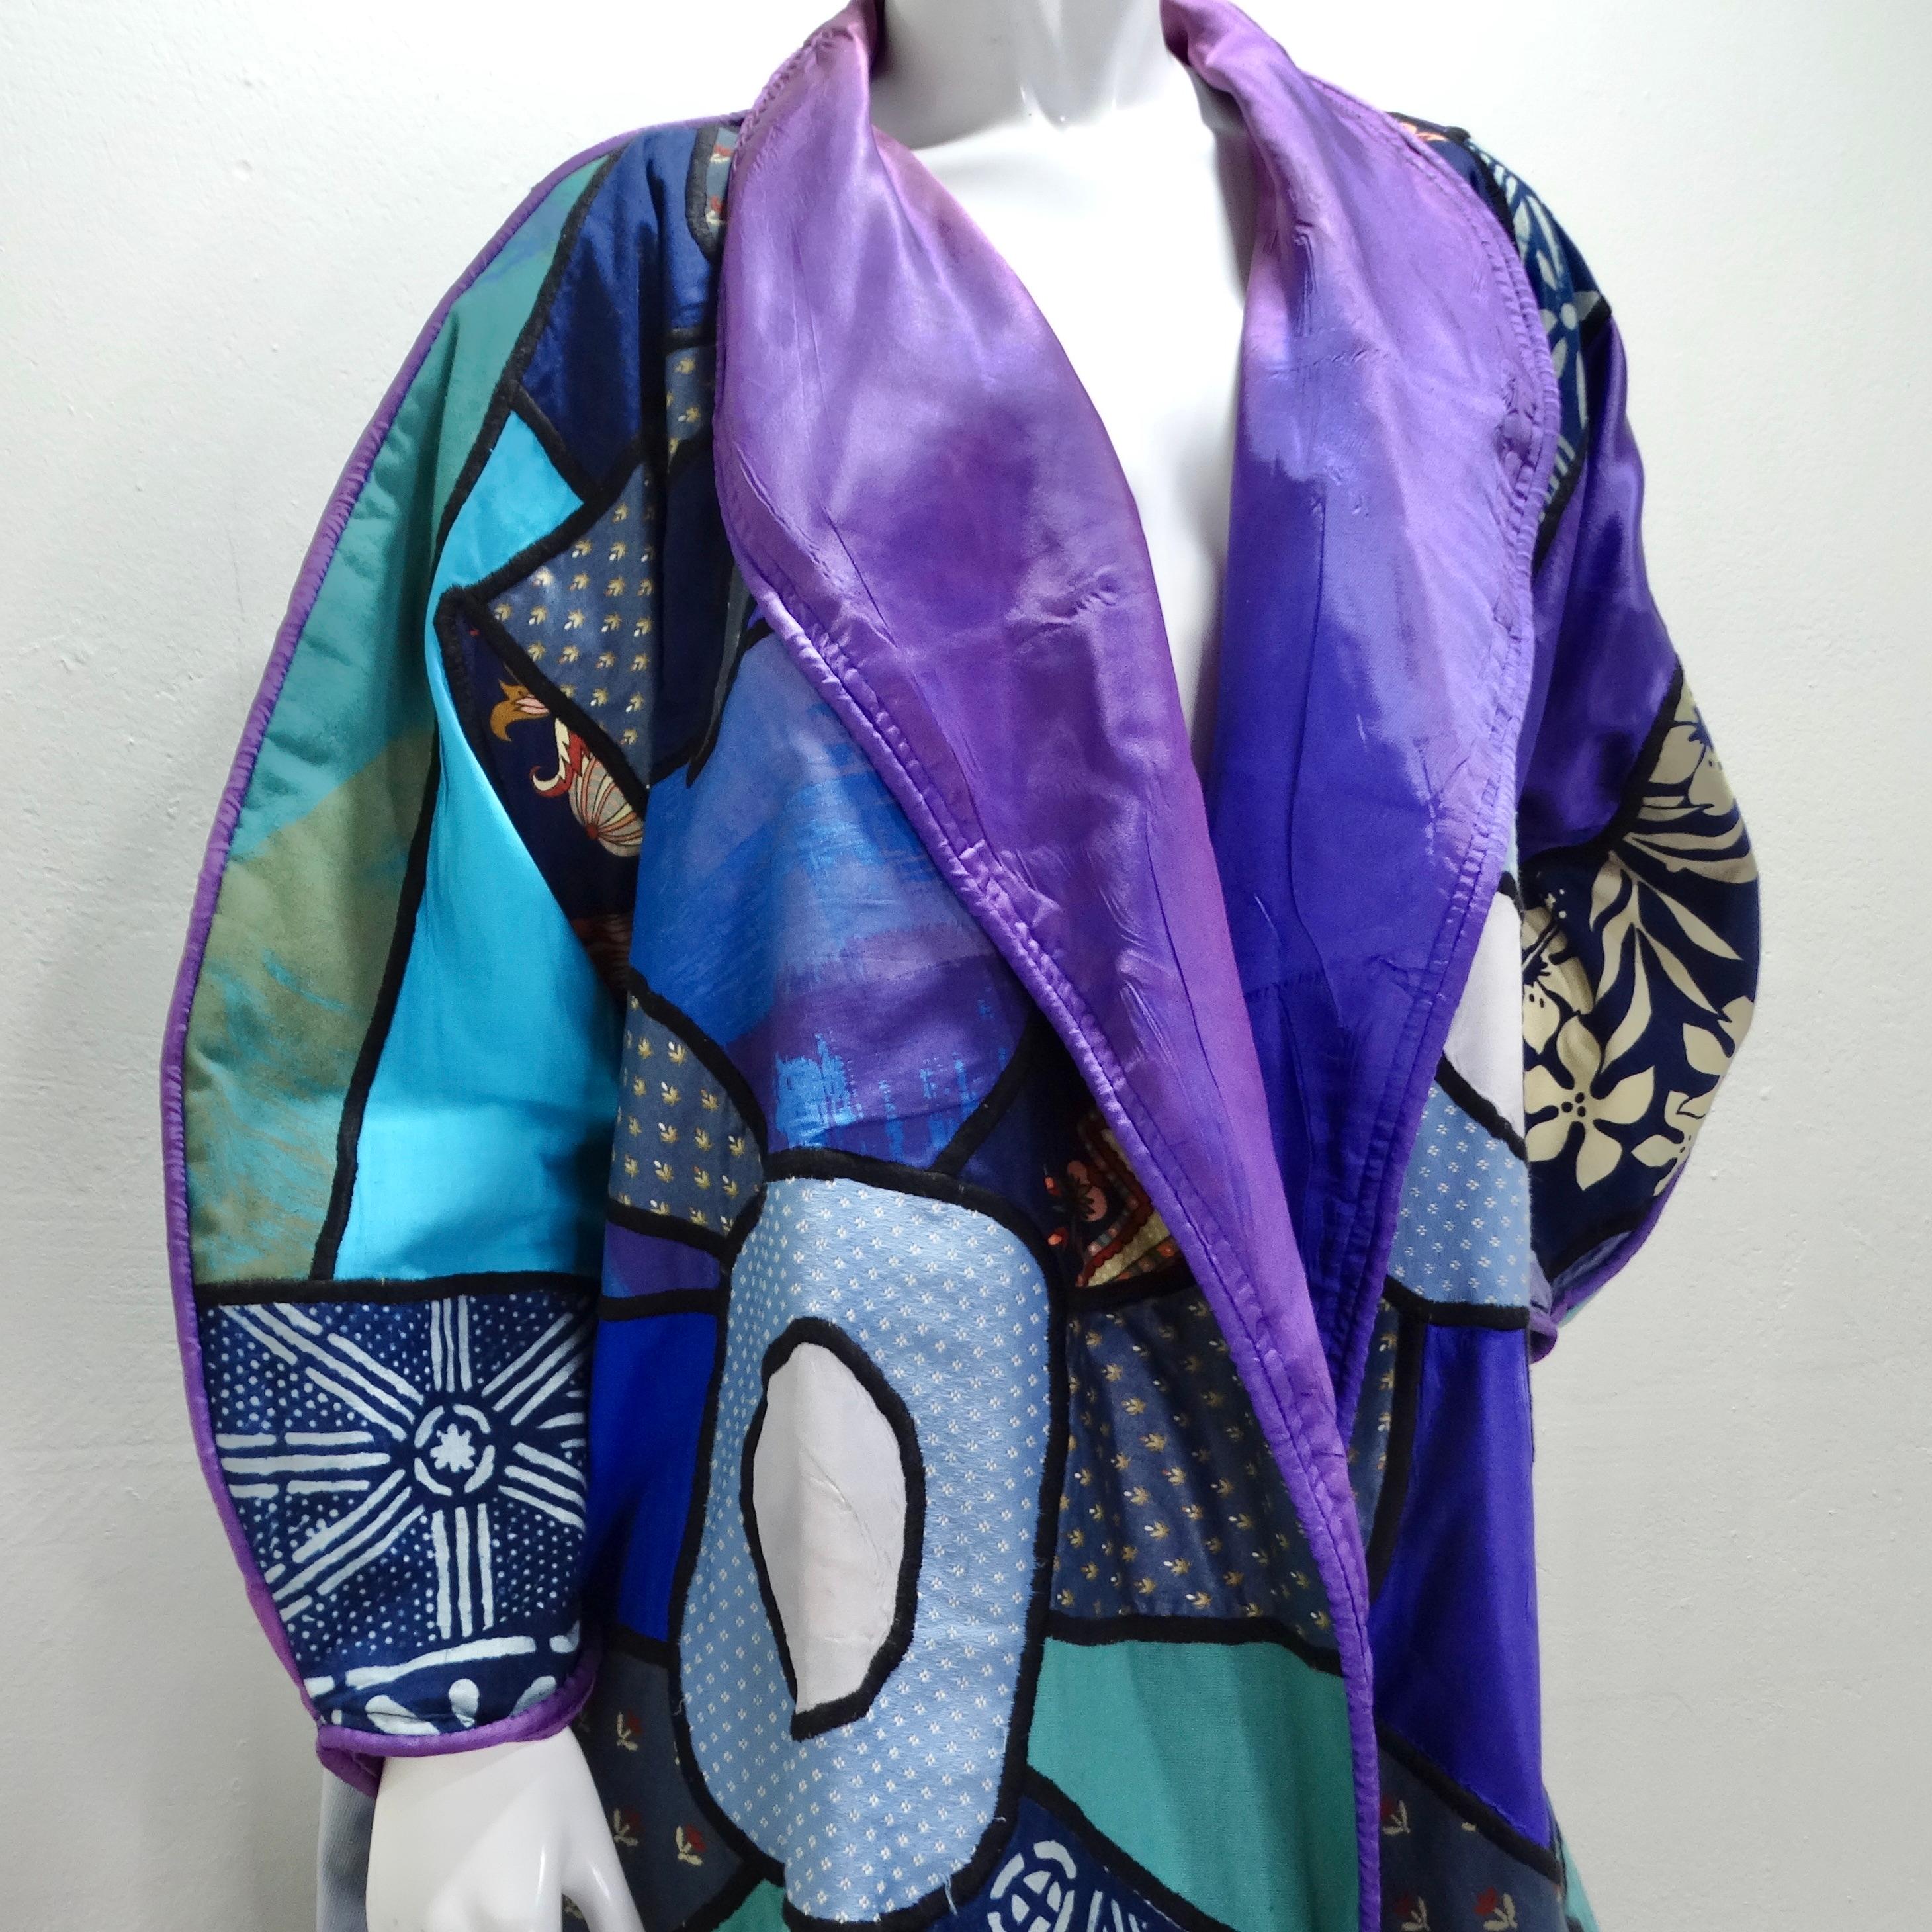 Fabrice présente le manteau patchwork Judith Roberts de La Colección des années 1980, une pièce étonnante et vibrante qui associe magnifiquement un mélange éclectique de tissus et de textures. Ce long manteau présente un design patchwork